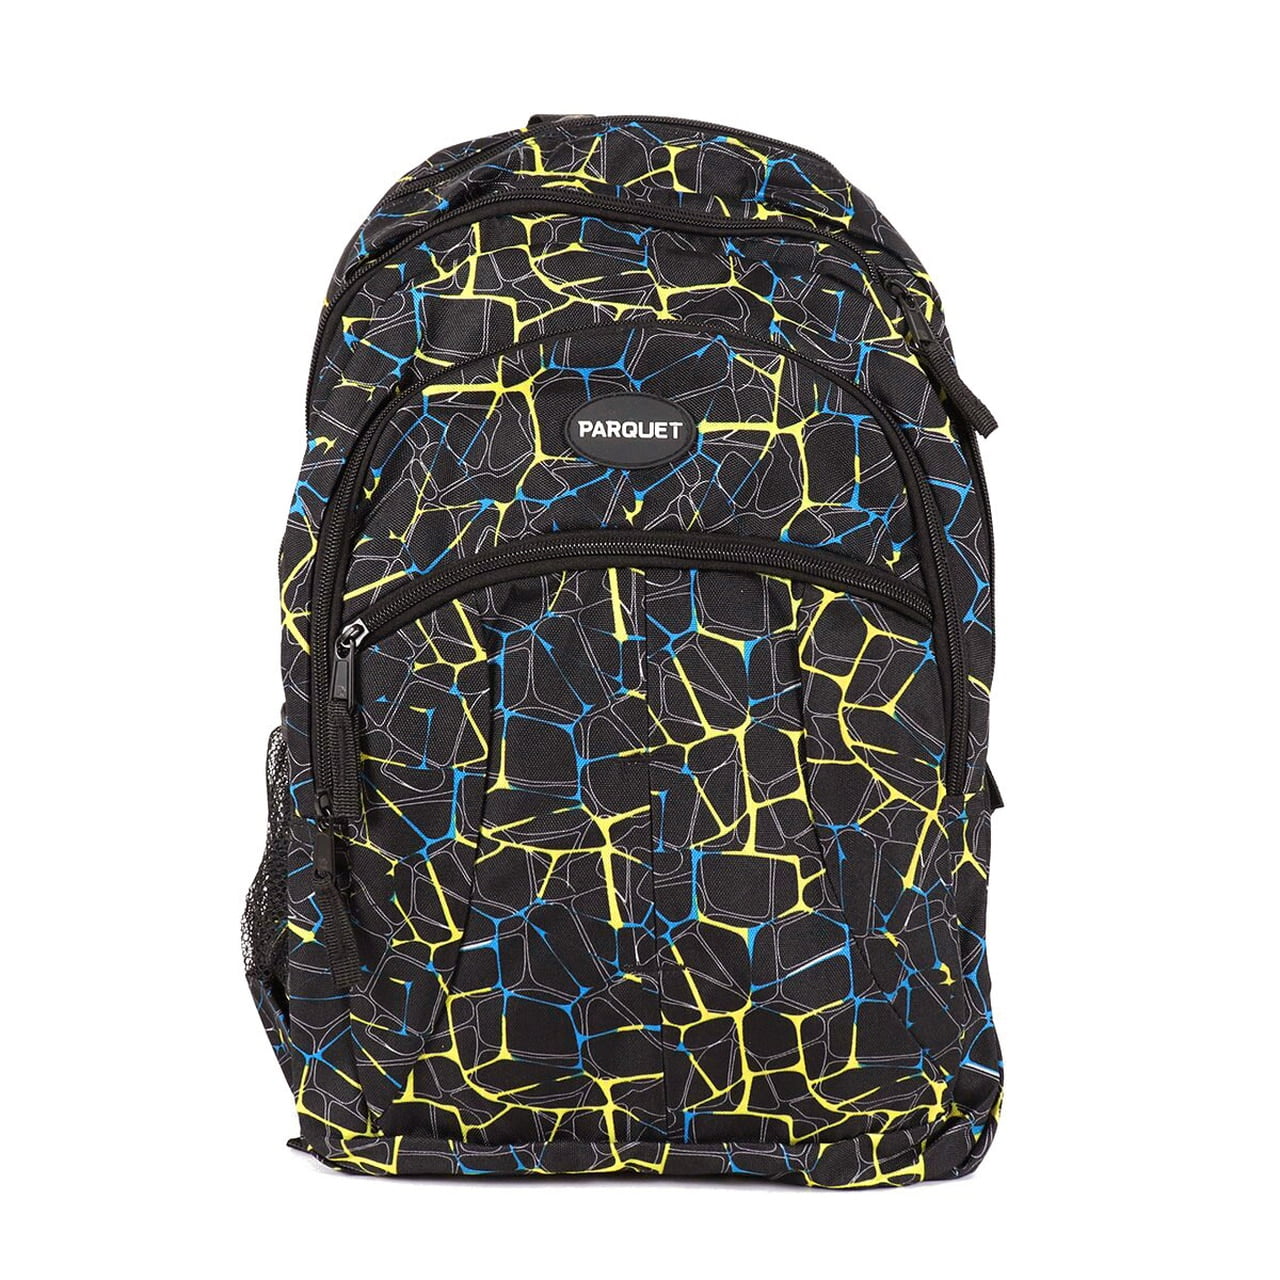 Gedeeltelijk toevoegen middag Parquet Novelty Backpack - School knapsacks + Fun Printed Bags - Walmart.com